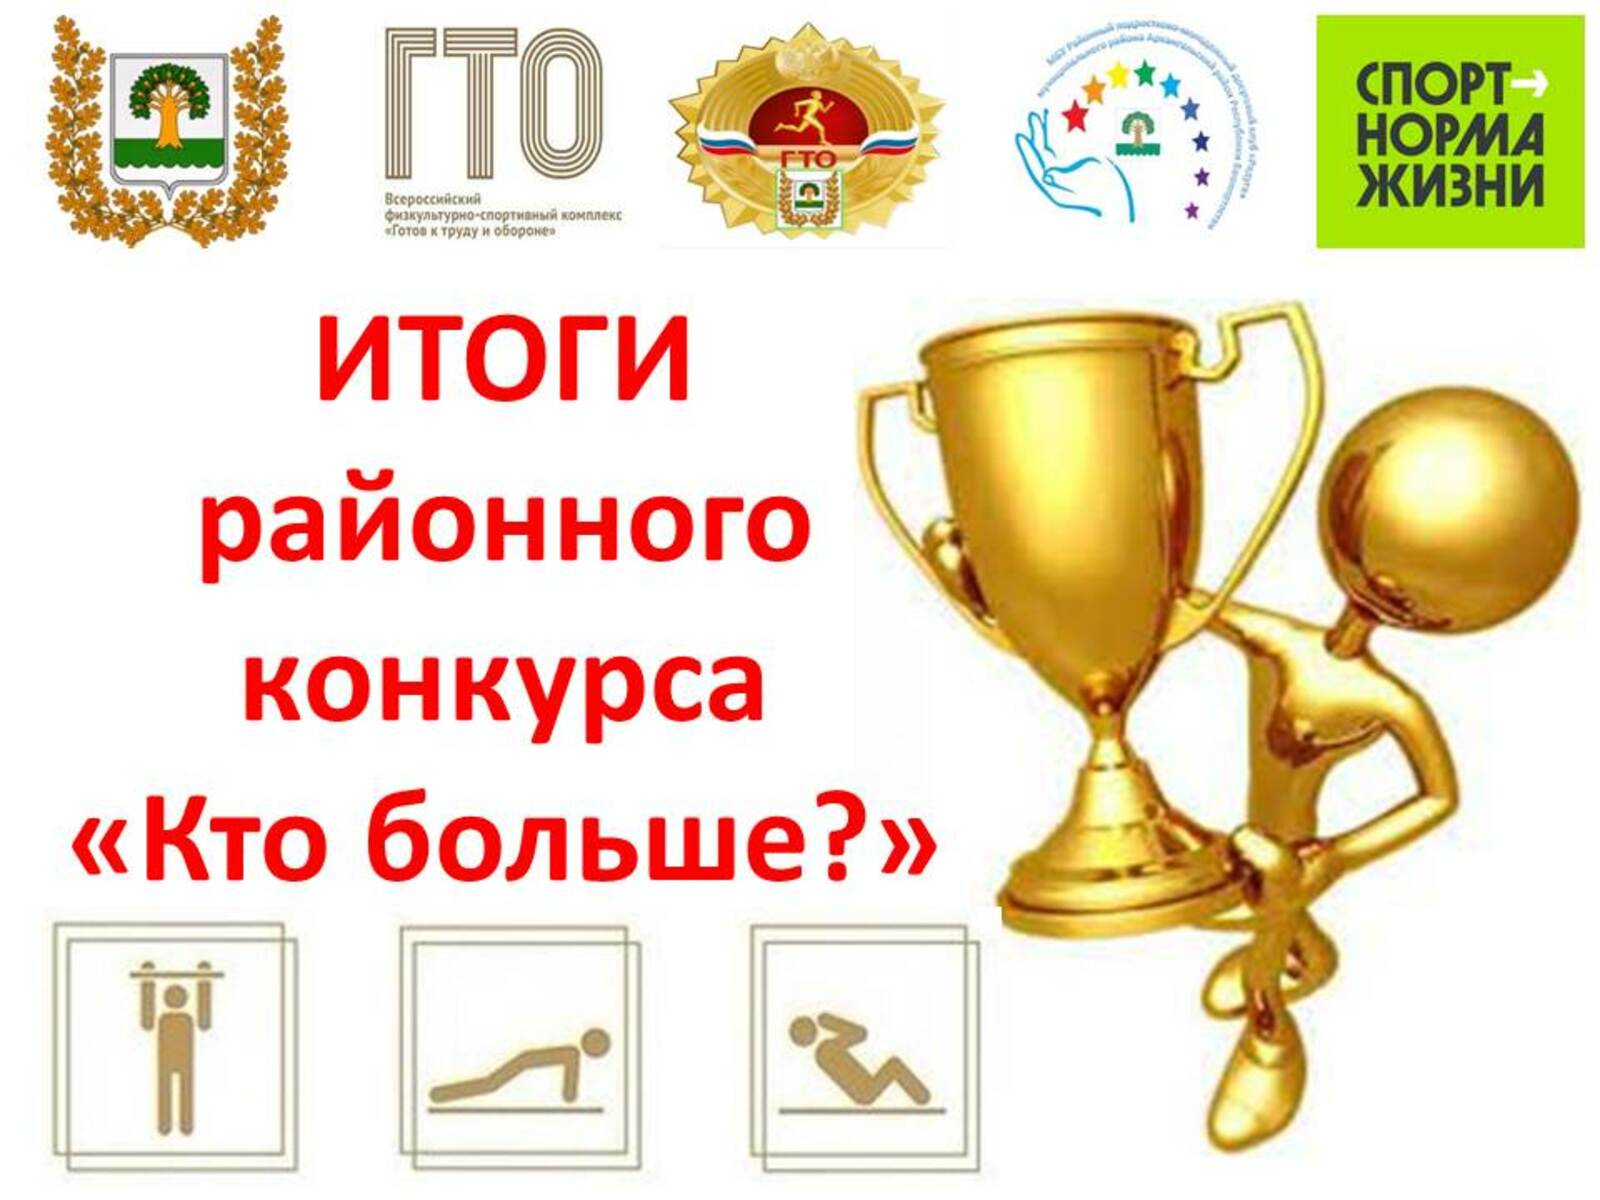 Подвели итоги районного конкурса по ГТО «Кто больше?»